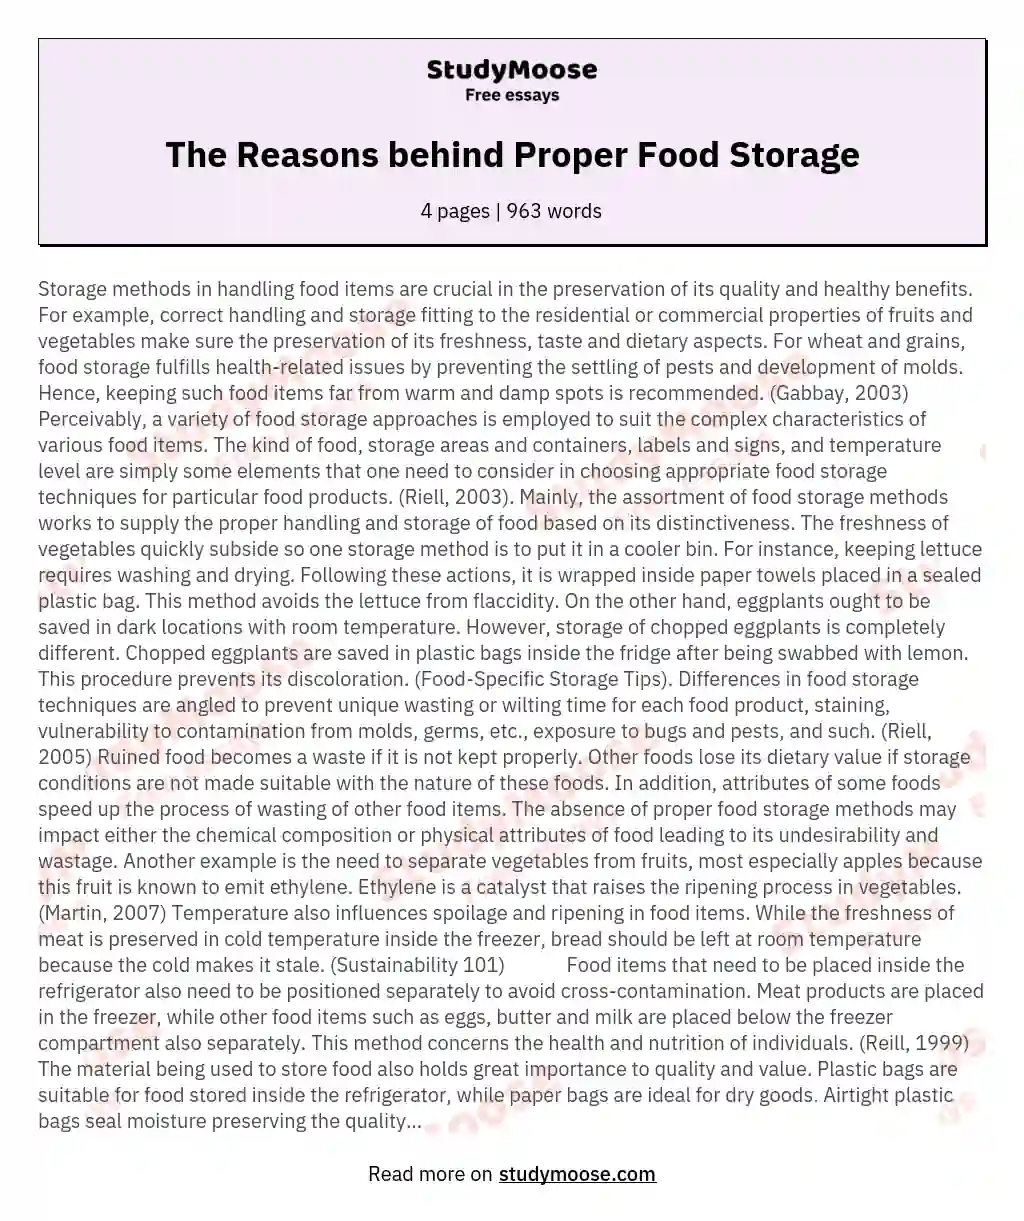 The Reasons behind Proper Food Storage essay